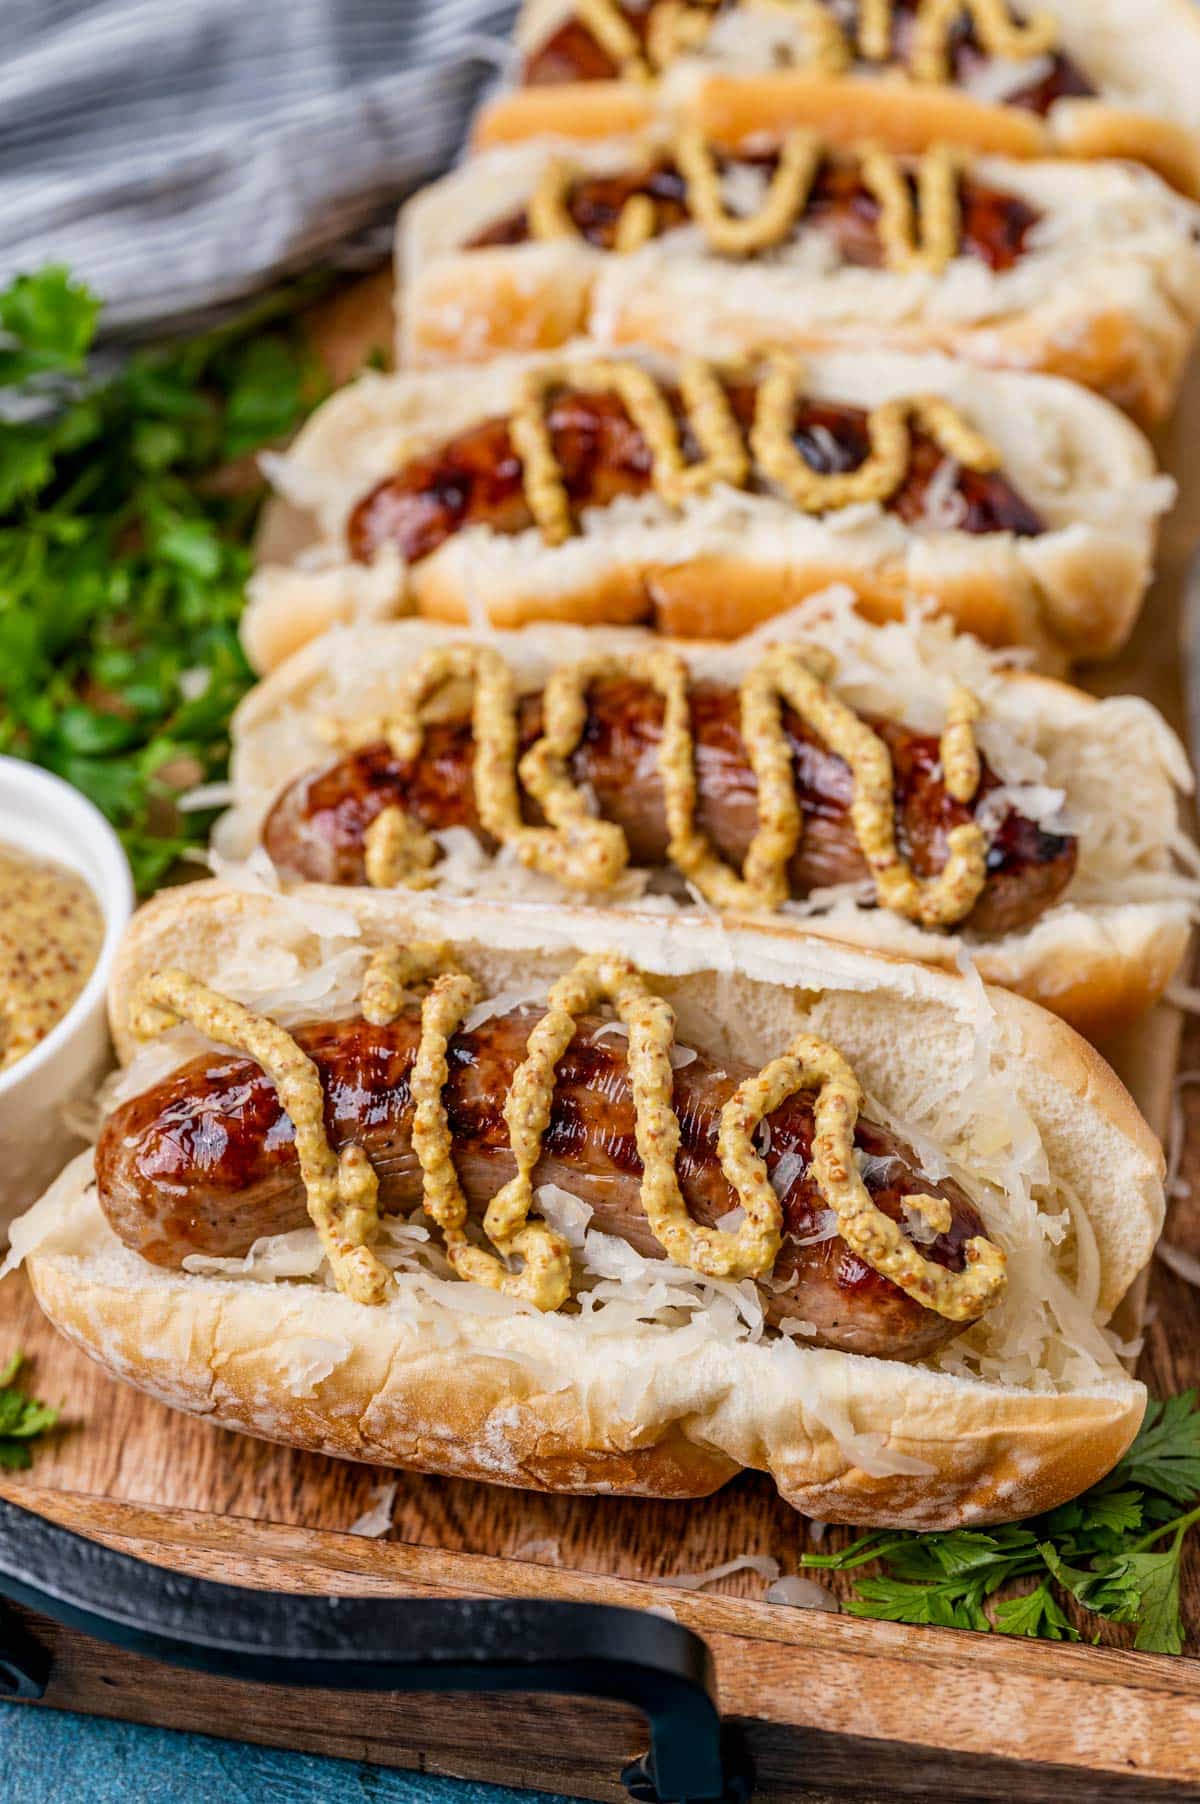 sauerkraut and bratwurst sandwiches with brown mustard